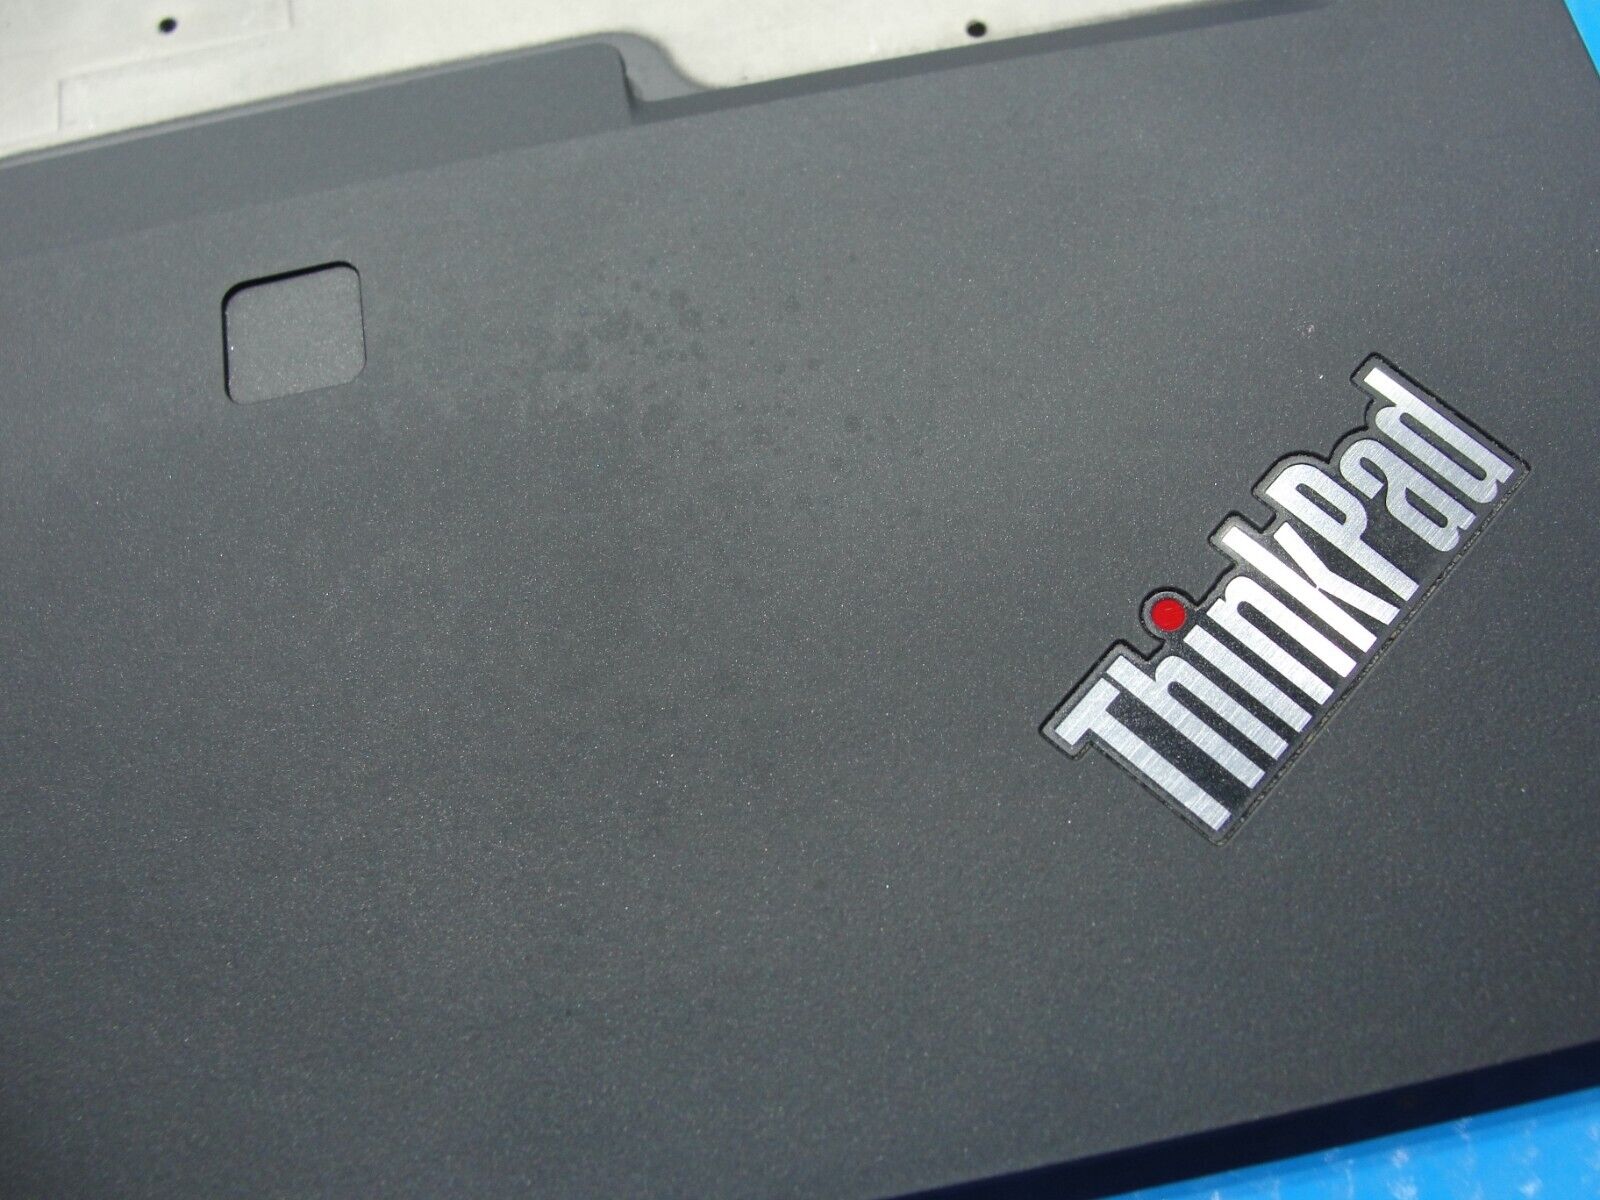 Lenovo ThinkPad T490 14